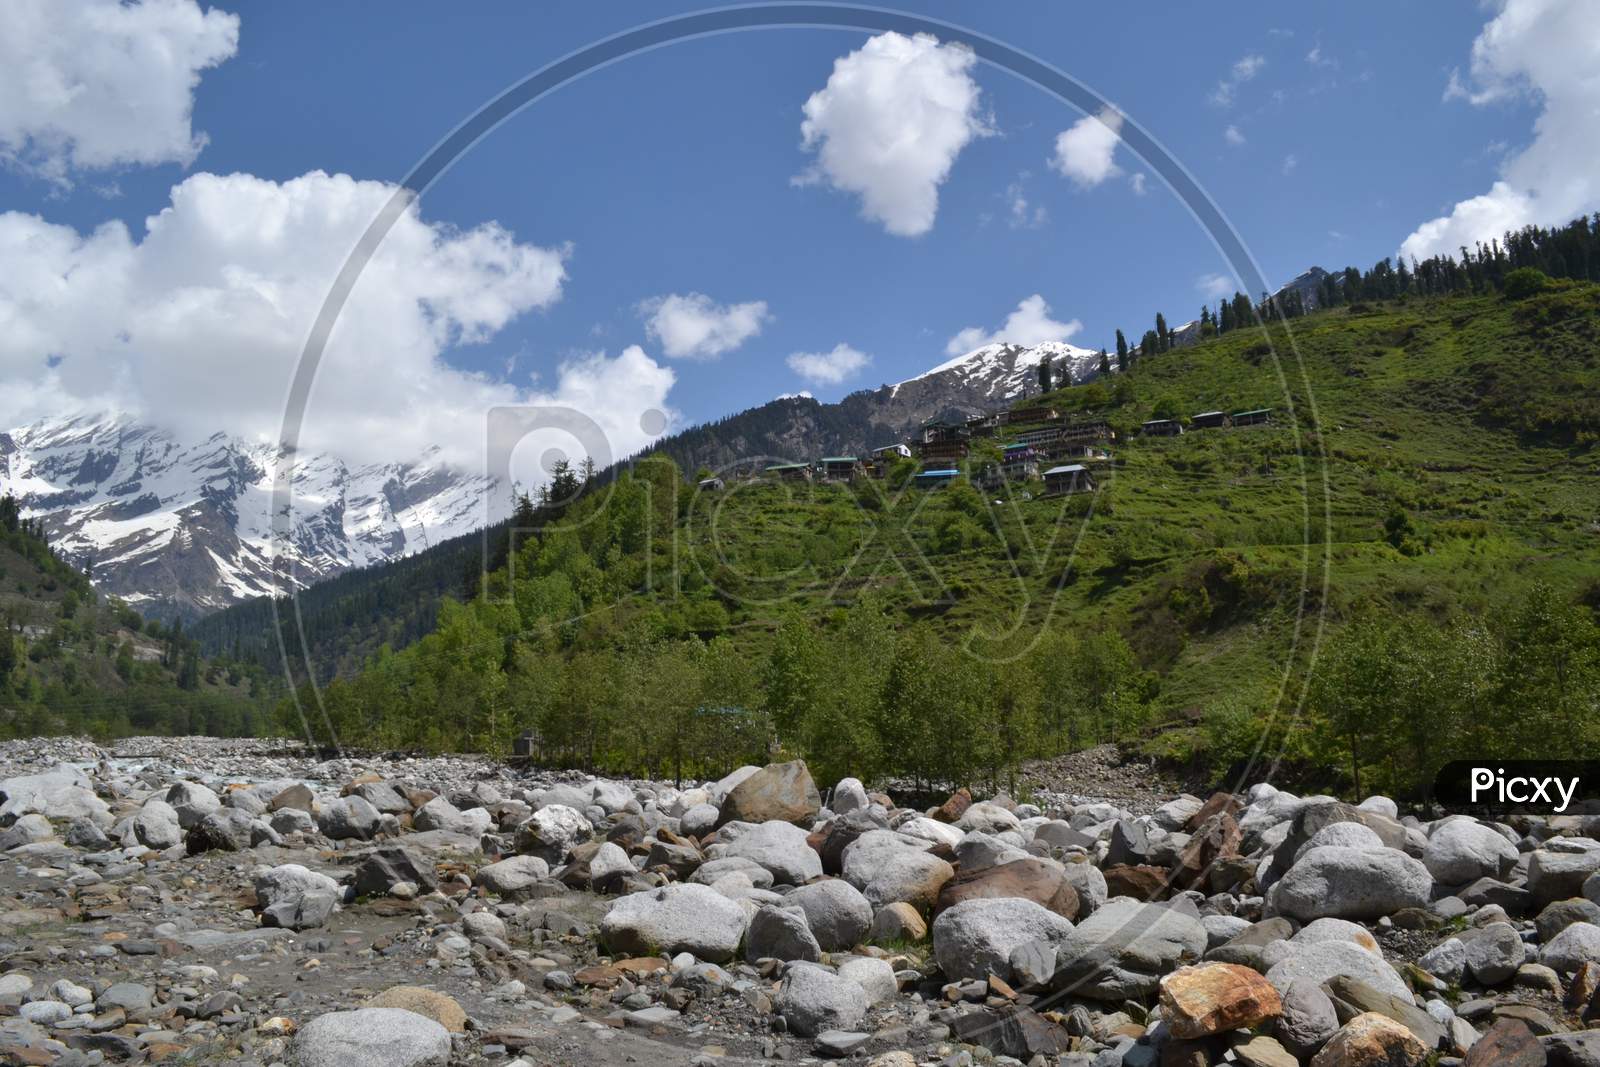 Solang Valley,Himachal Pradesh, India